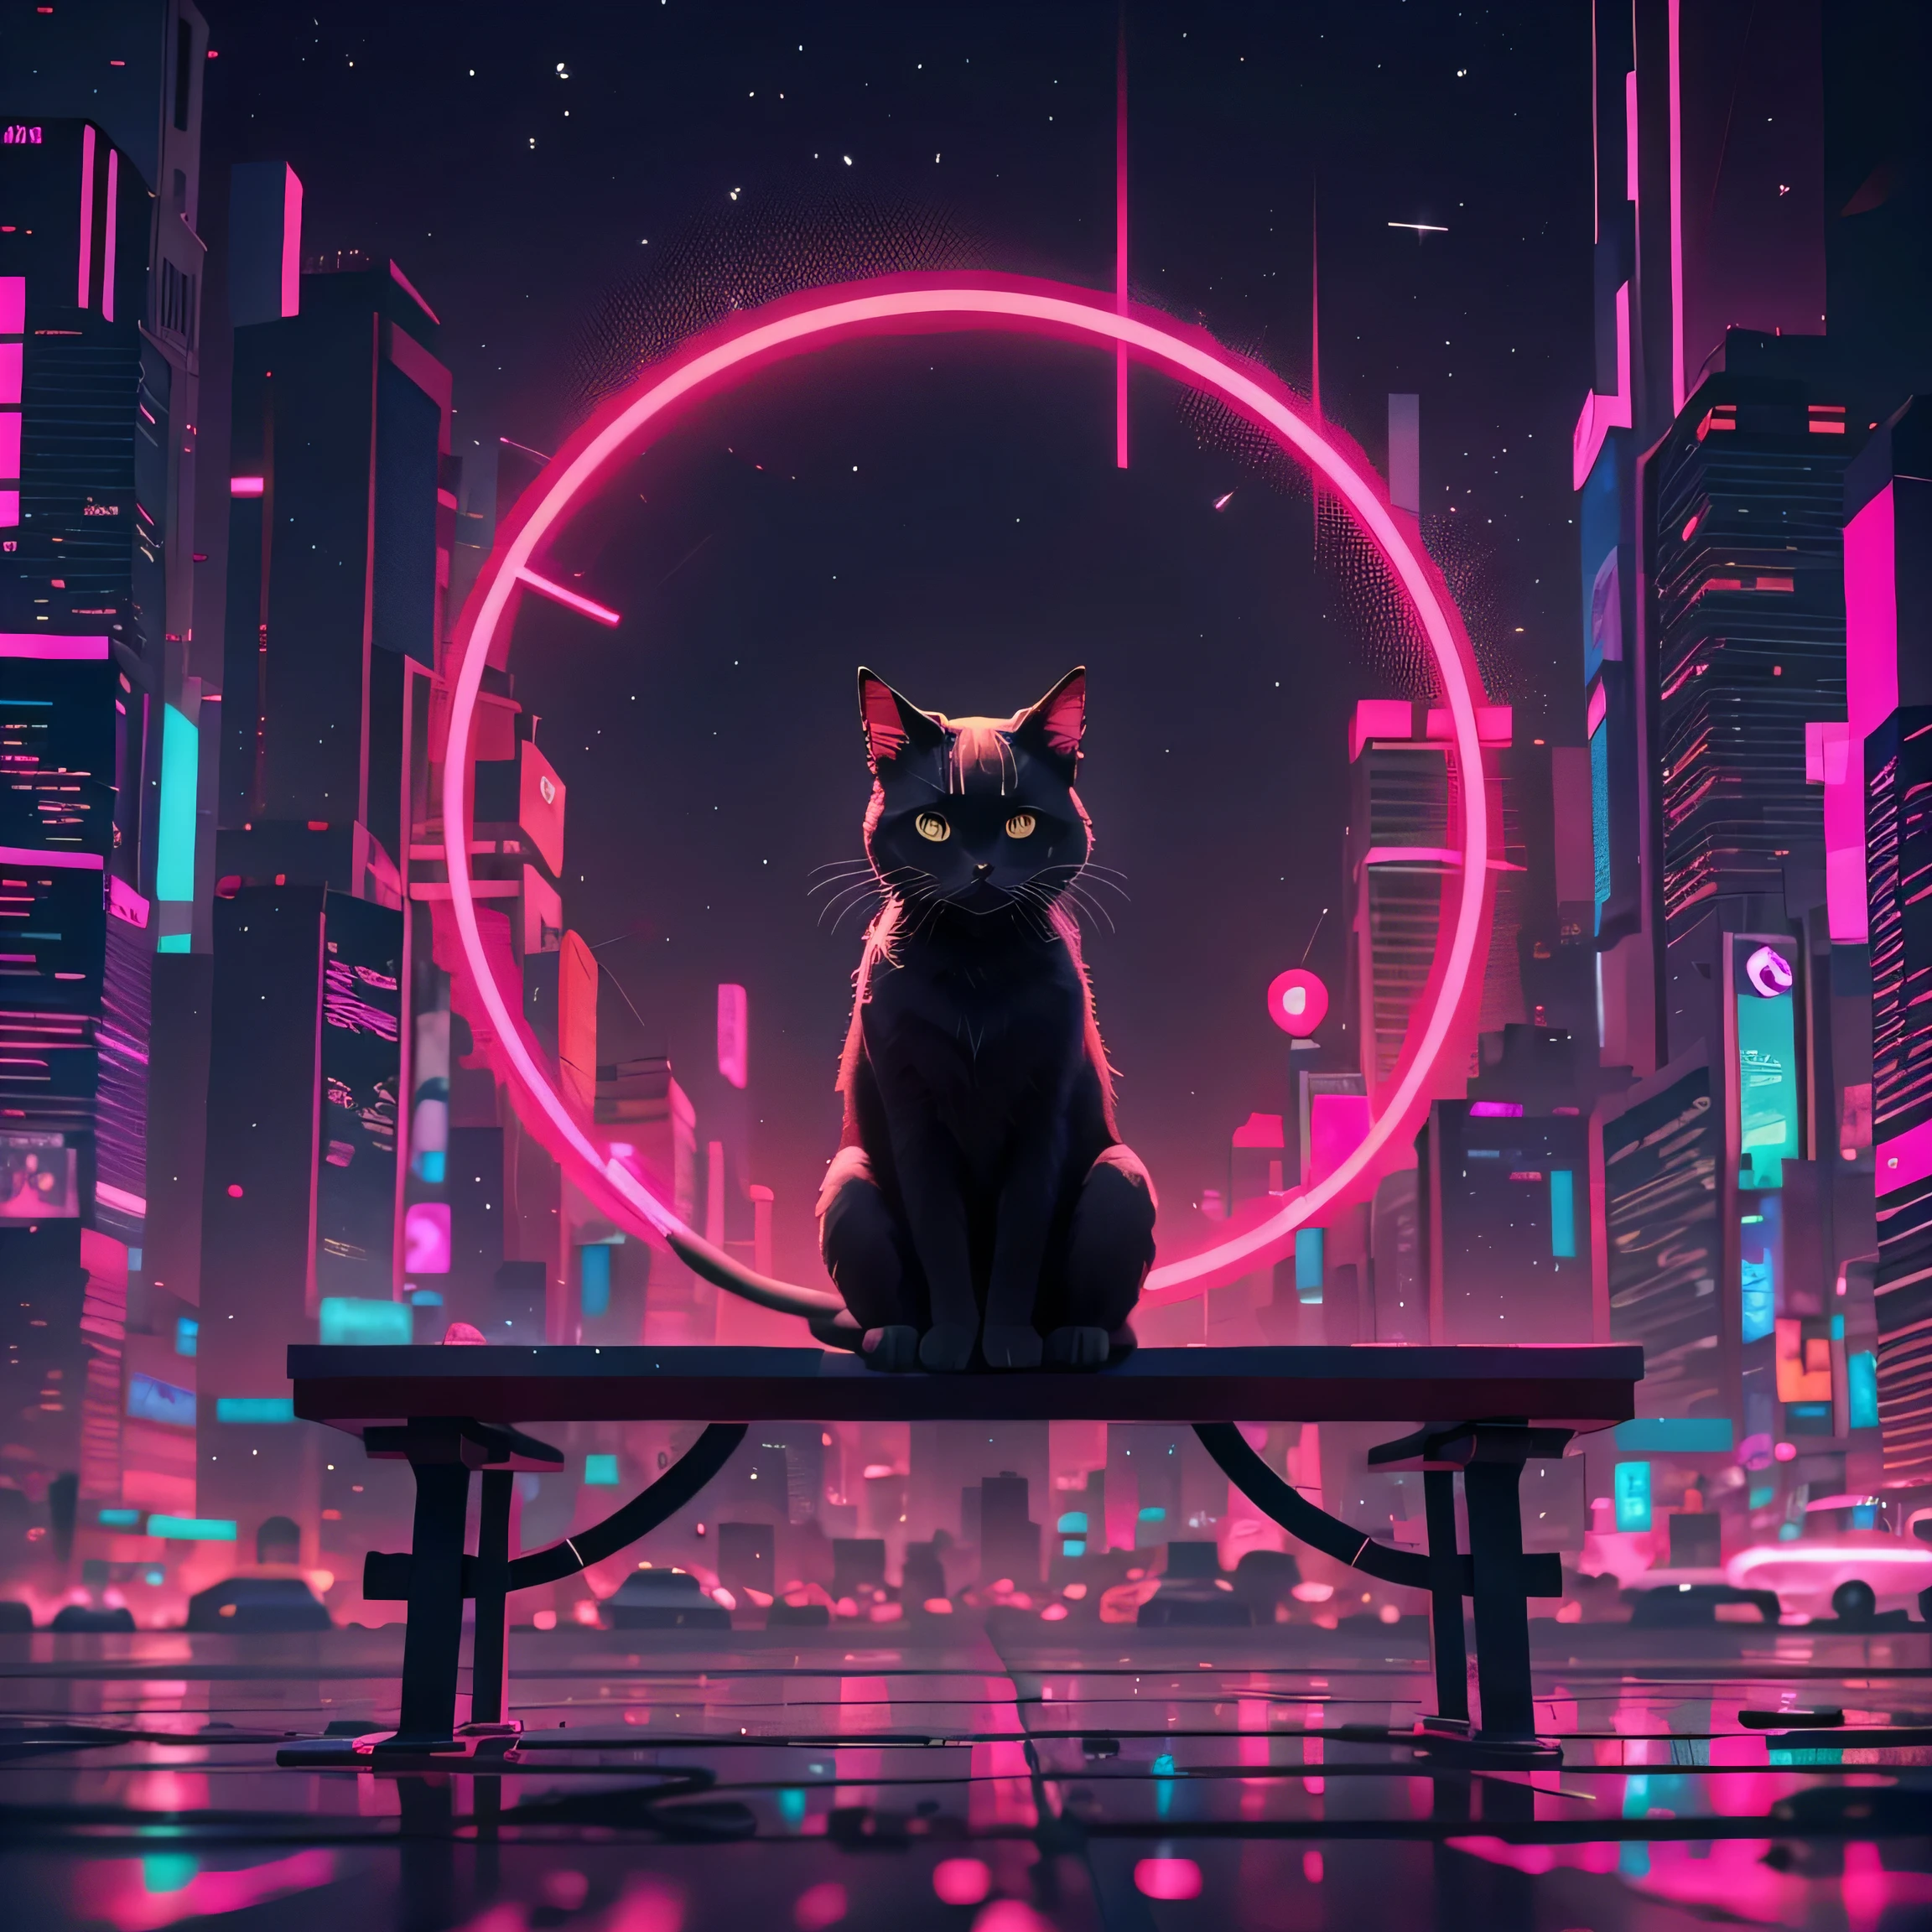 Um gato está sentado em um banco em frente a um círculo de néon, gato do vazio, símbolo do infinito como um gato, gato ciberpunk, Papéis de parede minimalistas, Gato Deus das Trevas, iluminação cinematográfica minimalista, orelhas de gato de metal e olhos brilhantes, Nekomimi, iluminação vermelha e cinematográfica, artístico. Alena Aenami, anime cat, Gato neon bonito